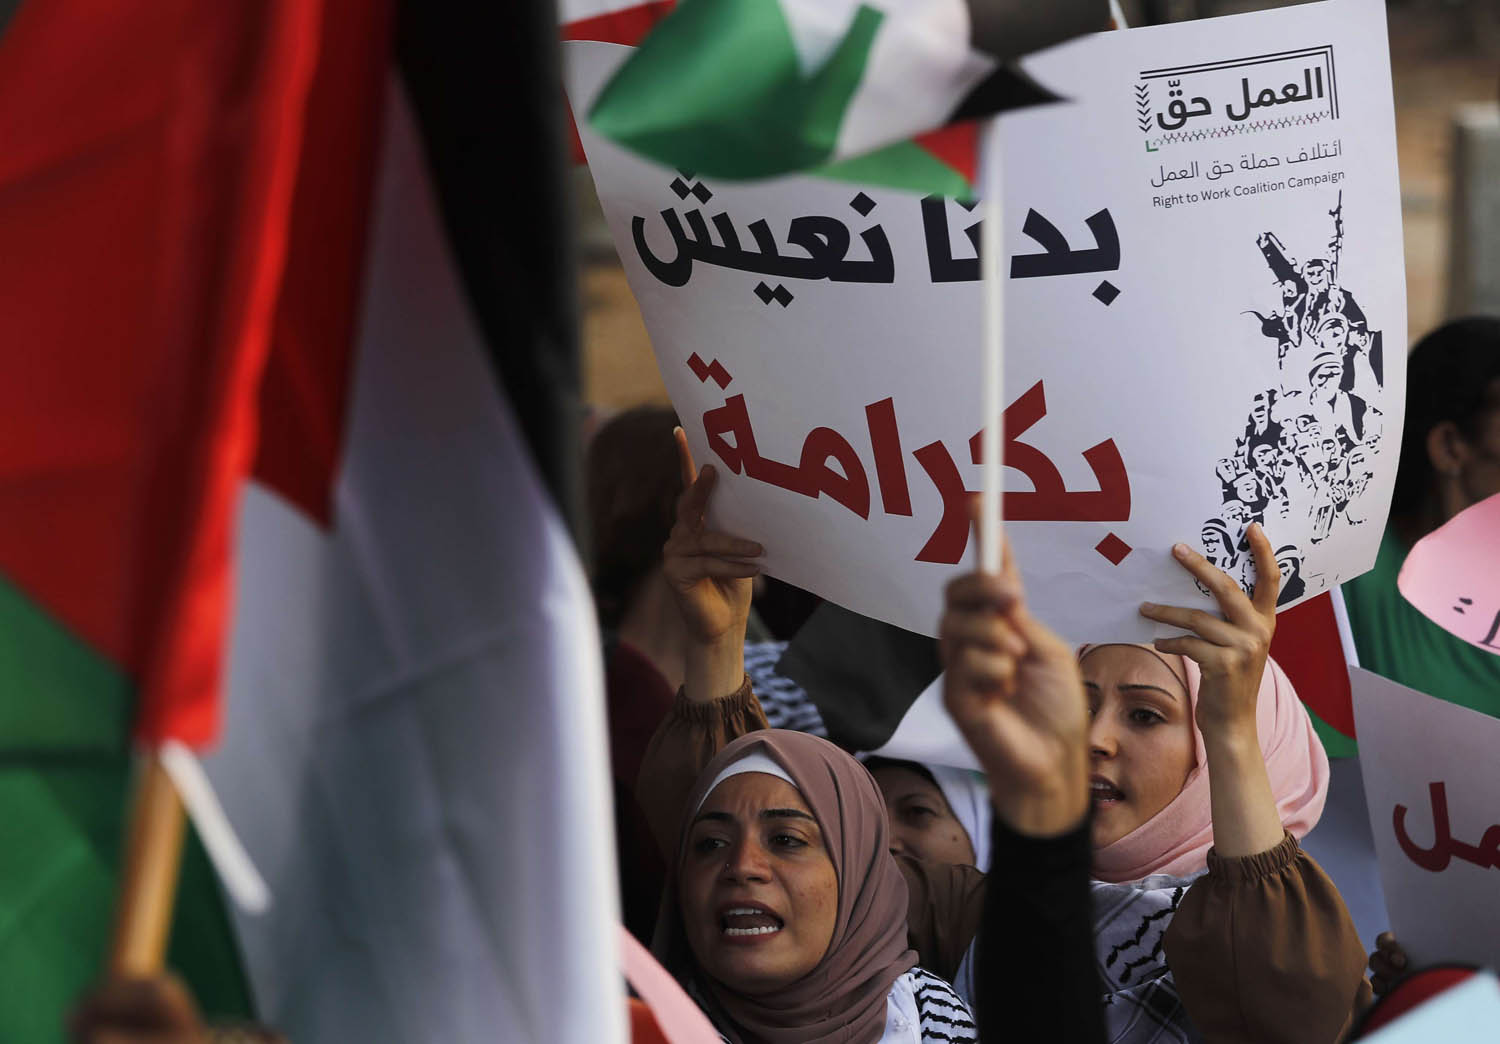 لاجئون فلسطينيون يتظاهرون ضد قوانين العمل اللبنانية